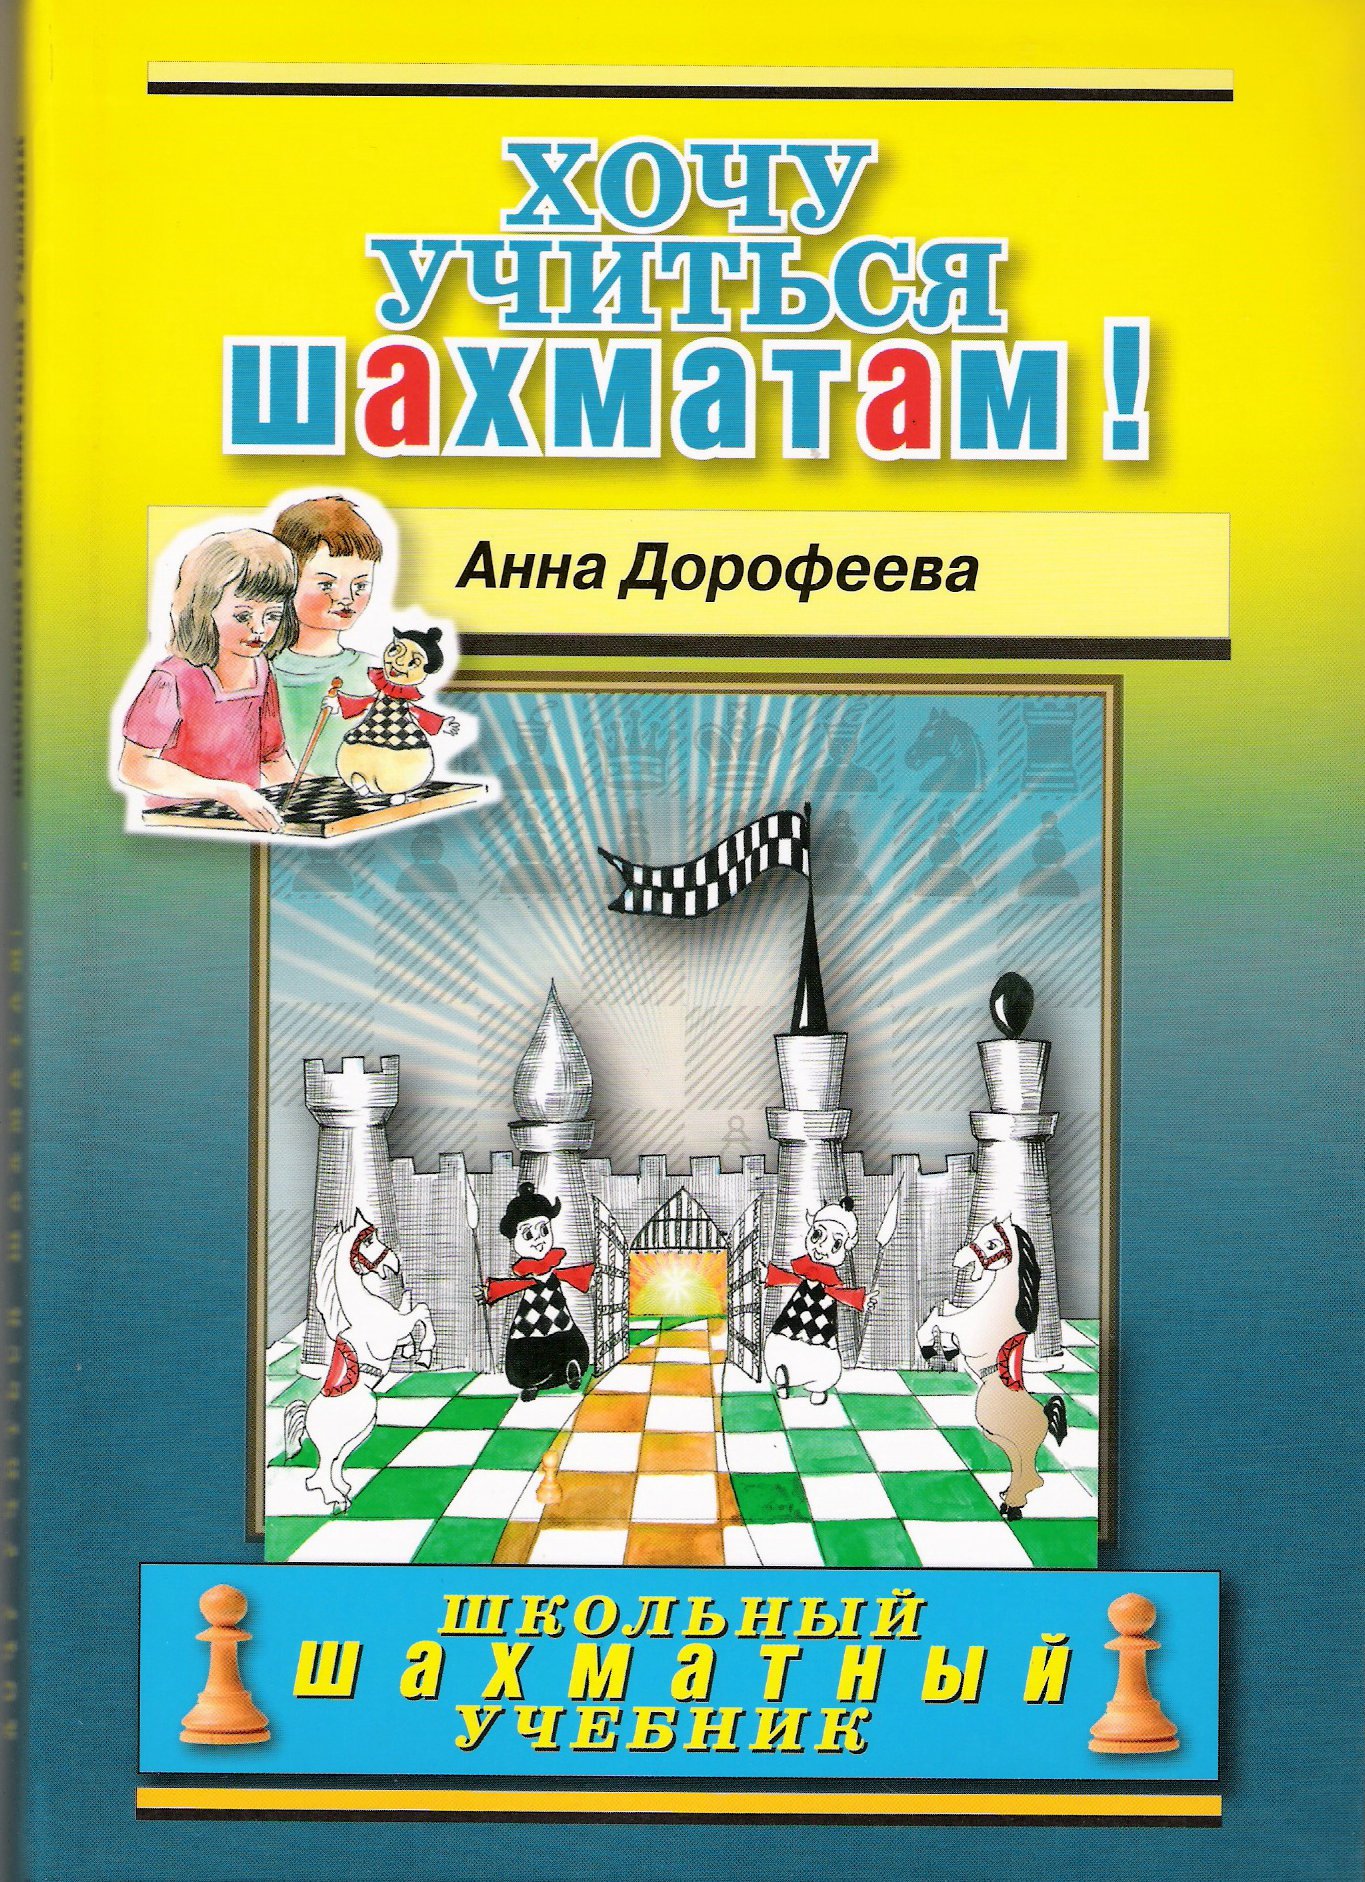 Книга по шахматам для начинающих скачать